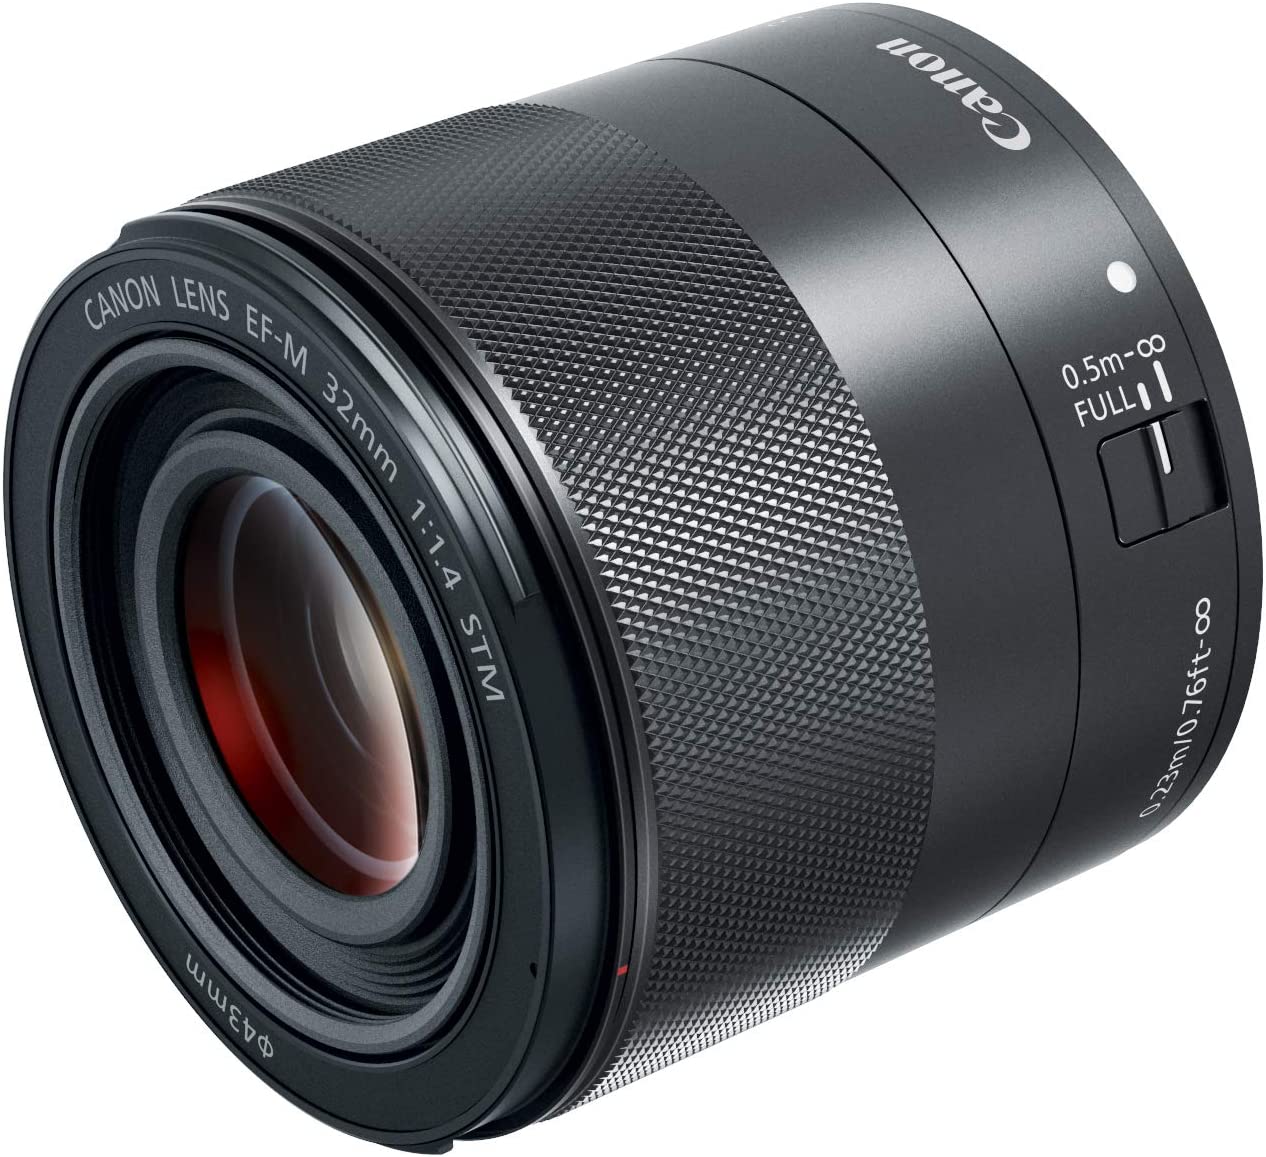 Canon Lens: RF 15-35mm f/2.8 L IS USM $1999, RF 14-35mm f/4 L IS USM $1299, RF 100mm f/2.8 L Macro IS USM $999 or EF-M 32mm f/1.4 STM Lens $399 + Free Shipping via Amazon